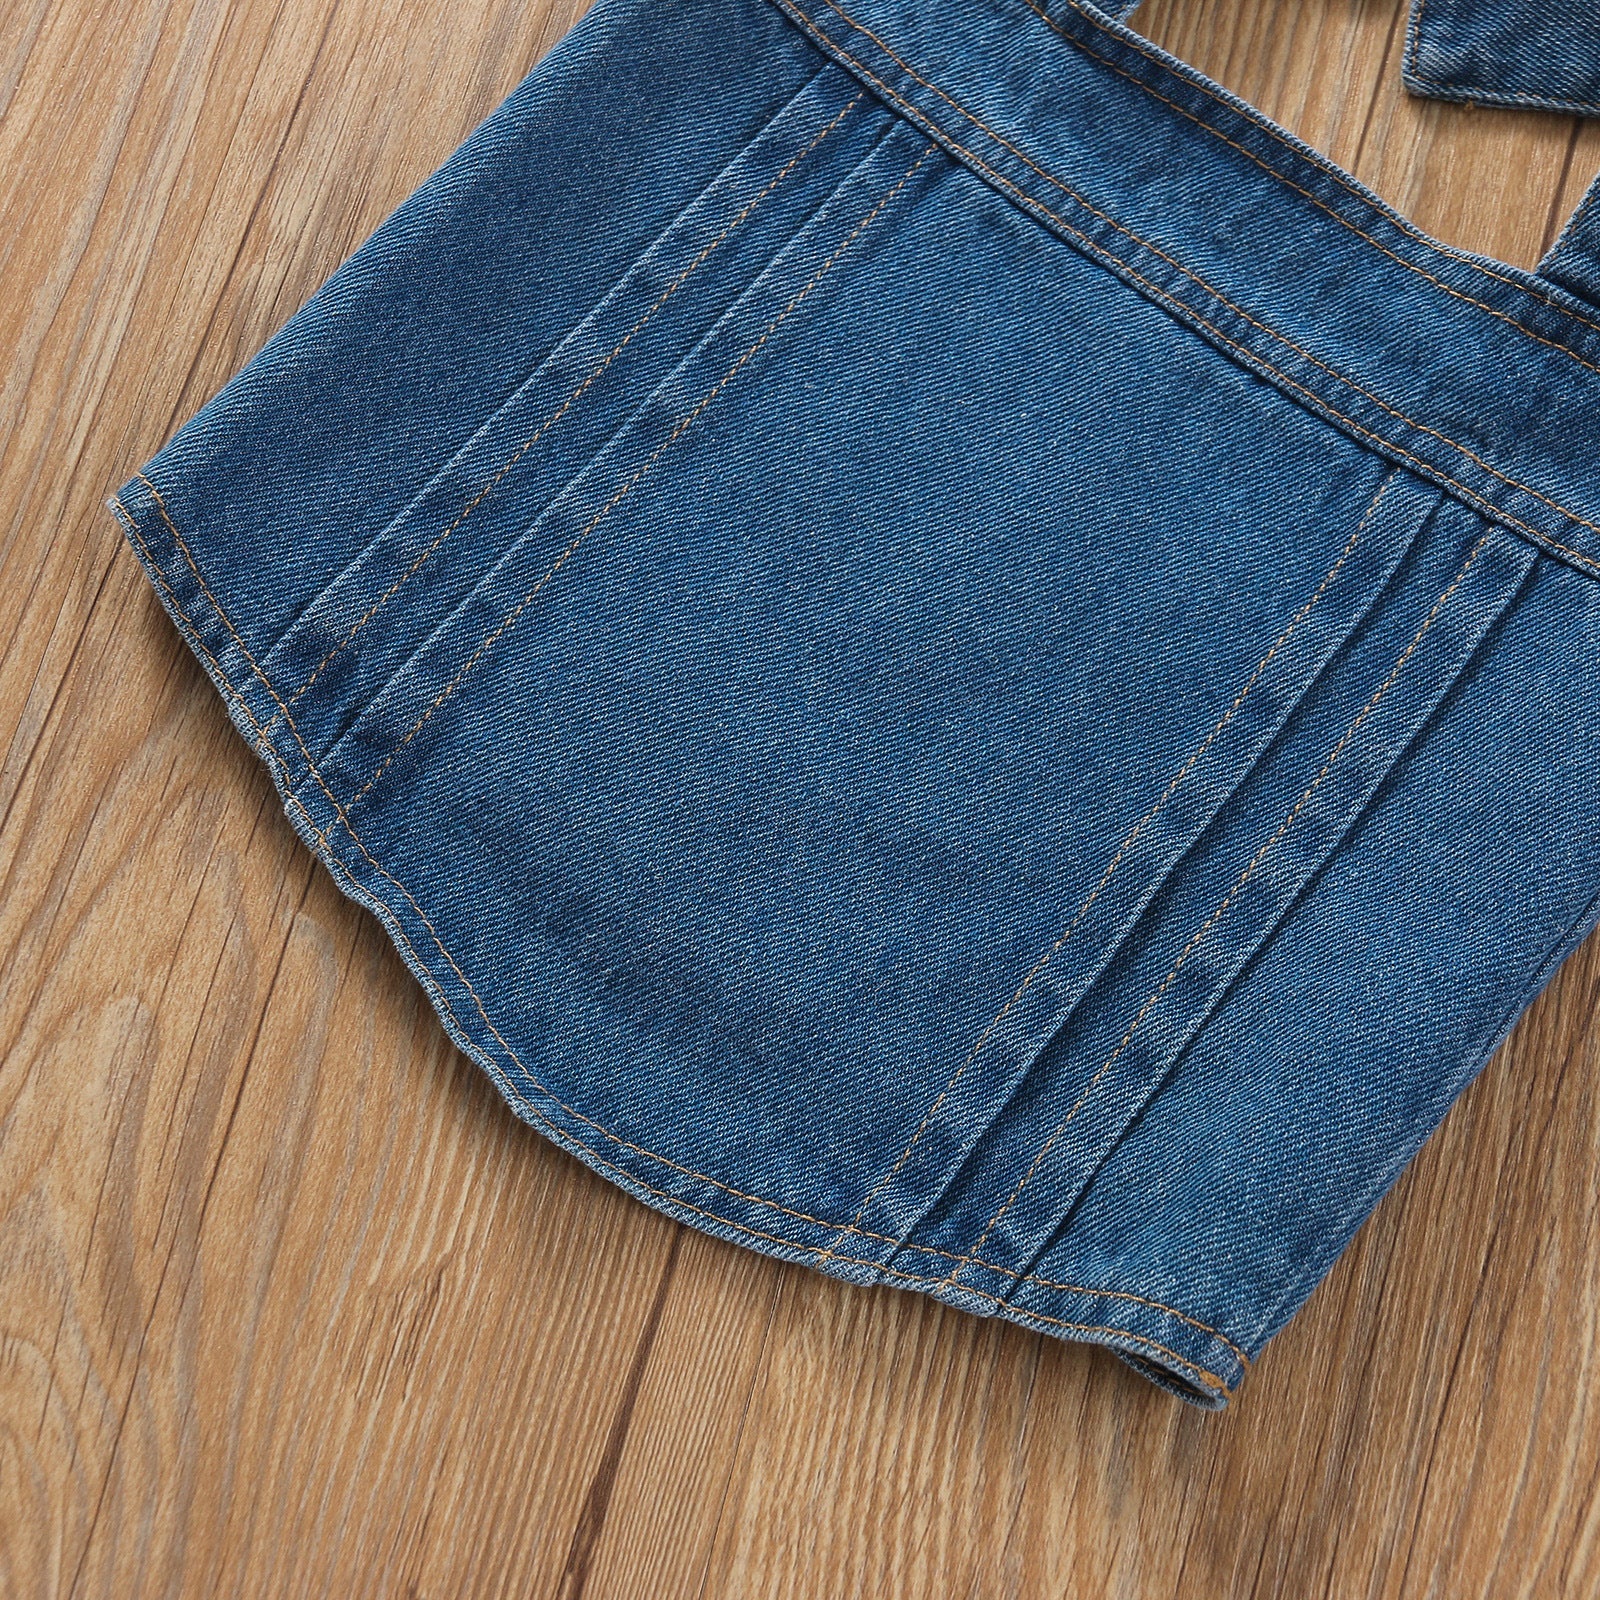 Toddler Kids Girls Bow Suspender Denim Jacket with Holes Denim Pants Set